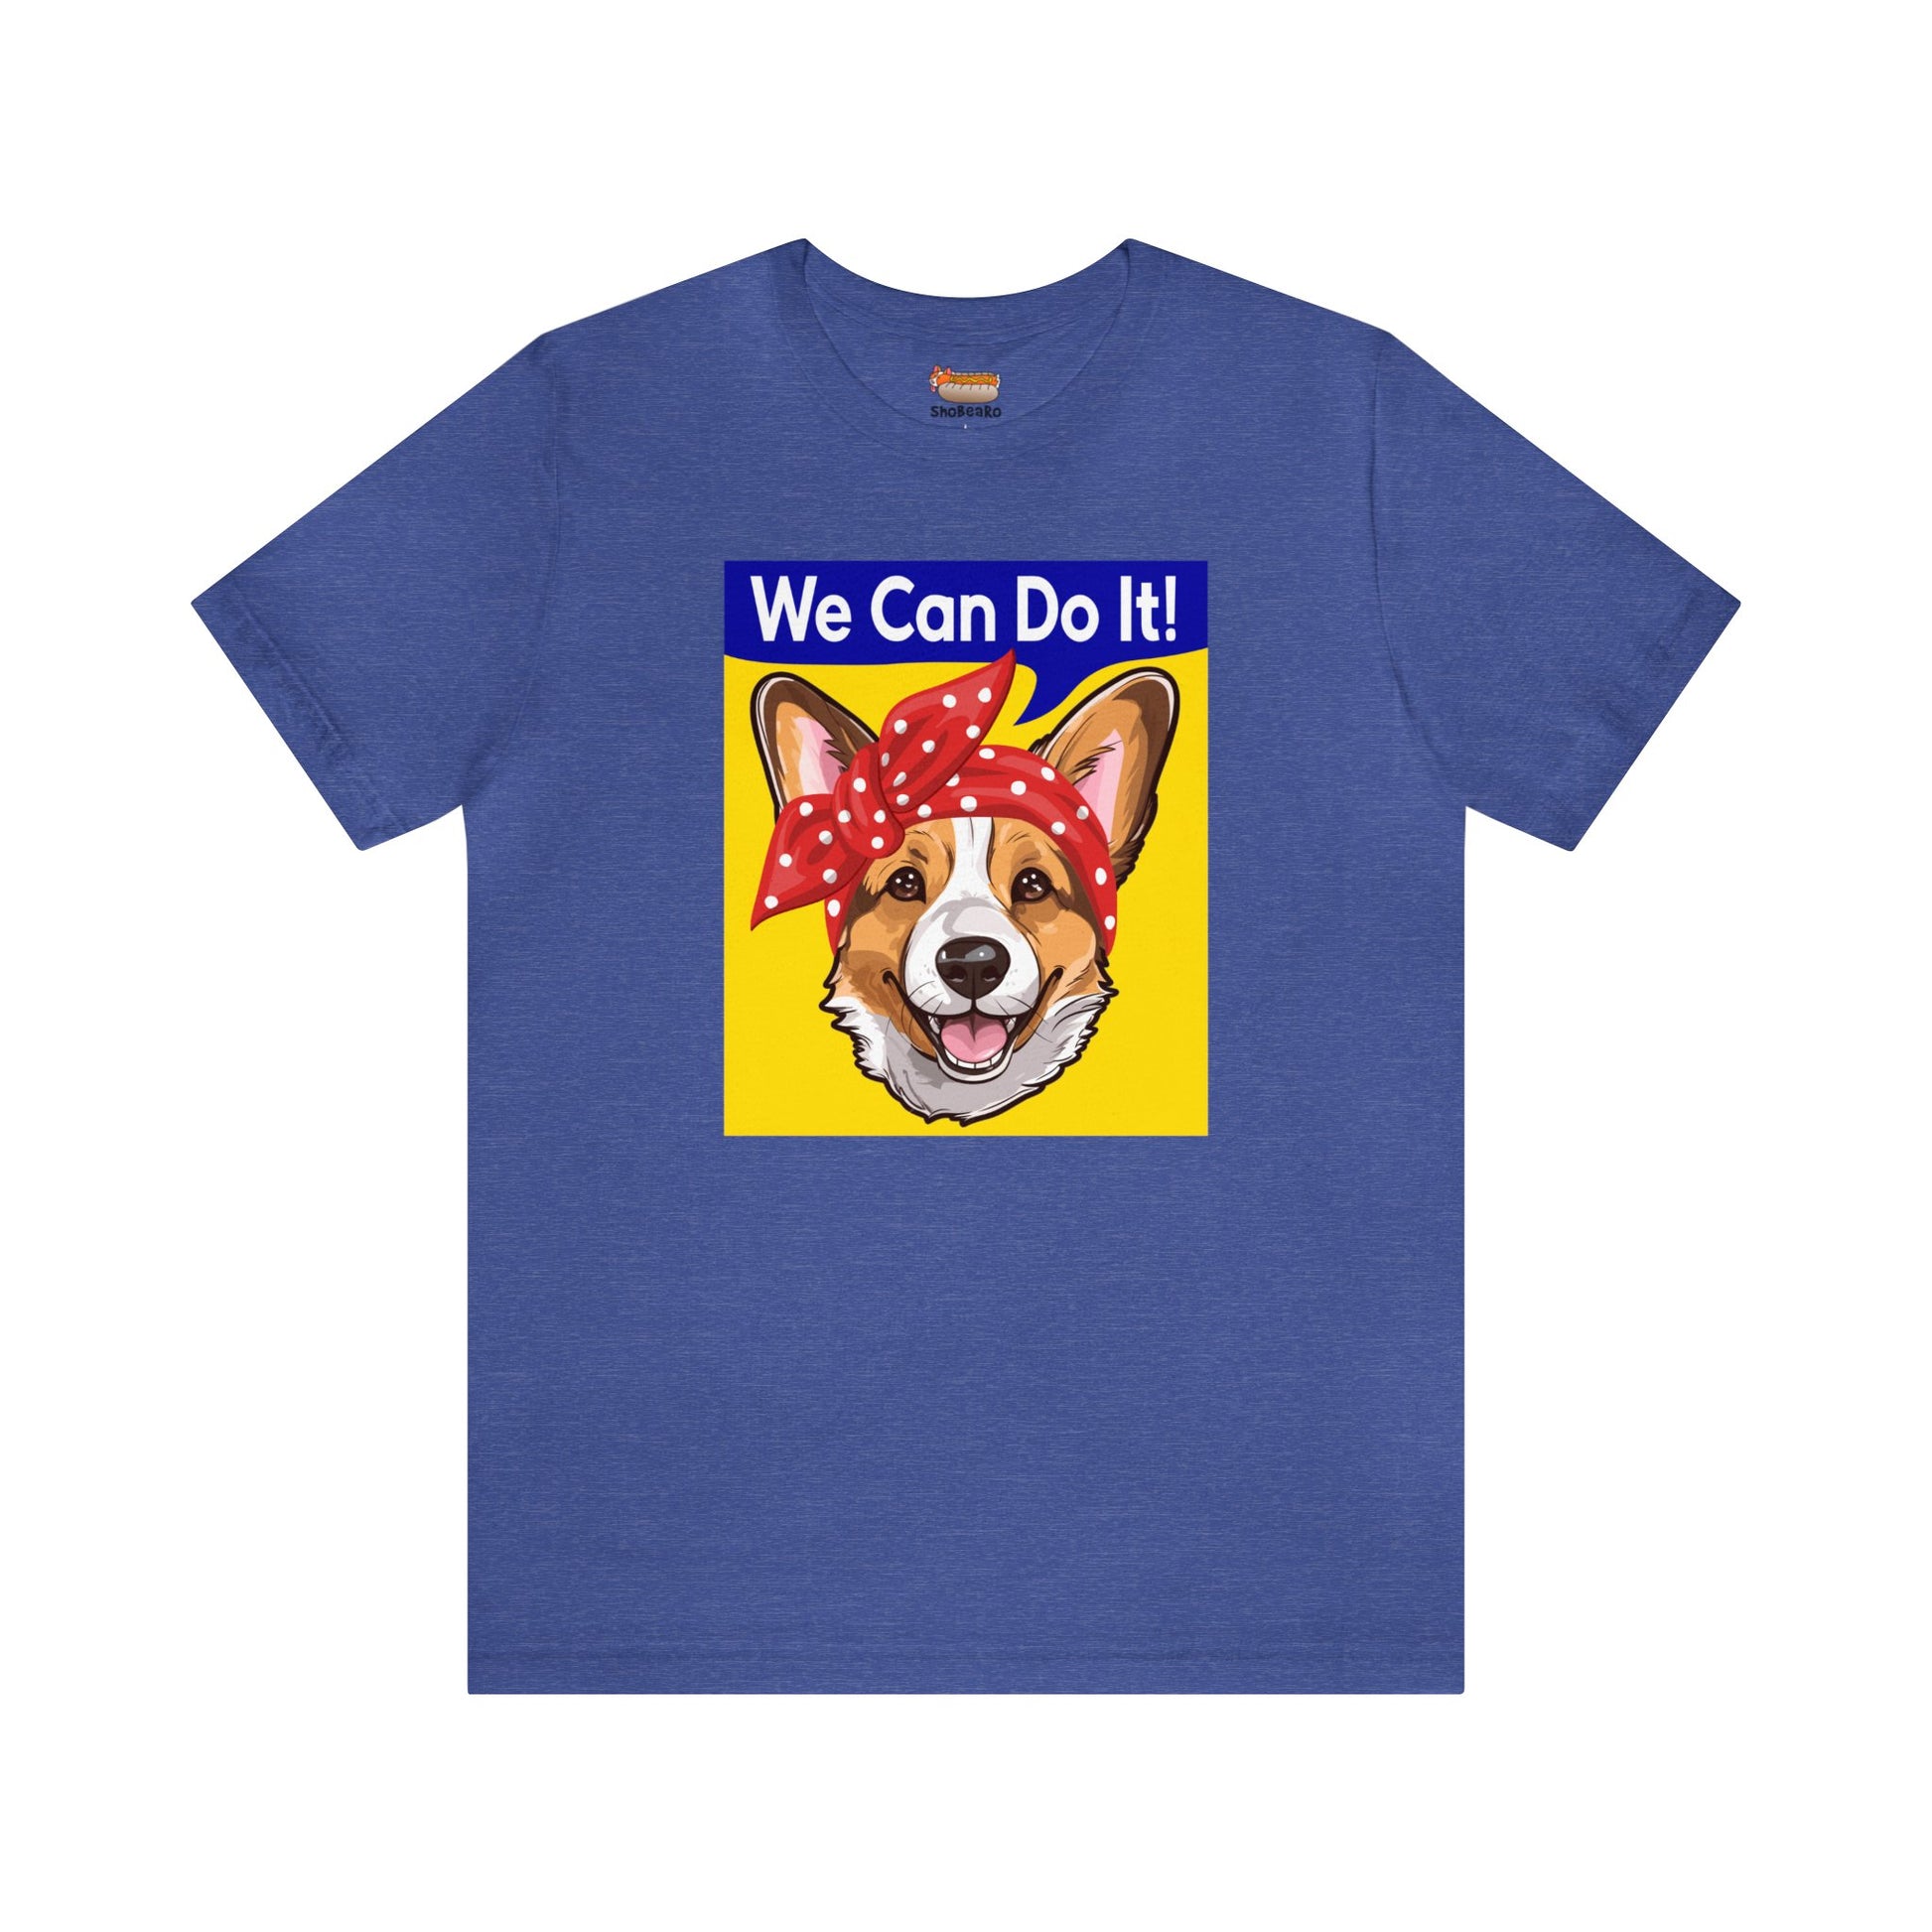 blue corgi t-shirt rosie the riveter women's rights shirt gift for her dog lover